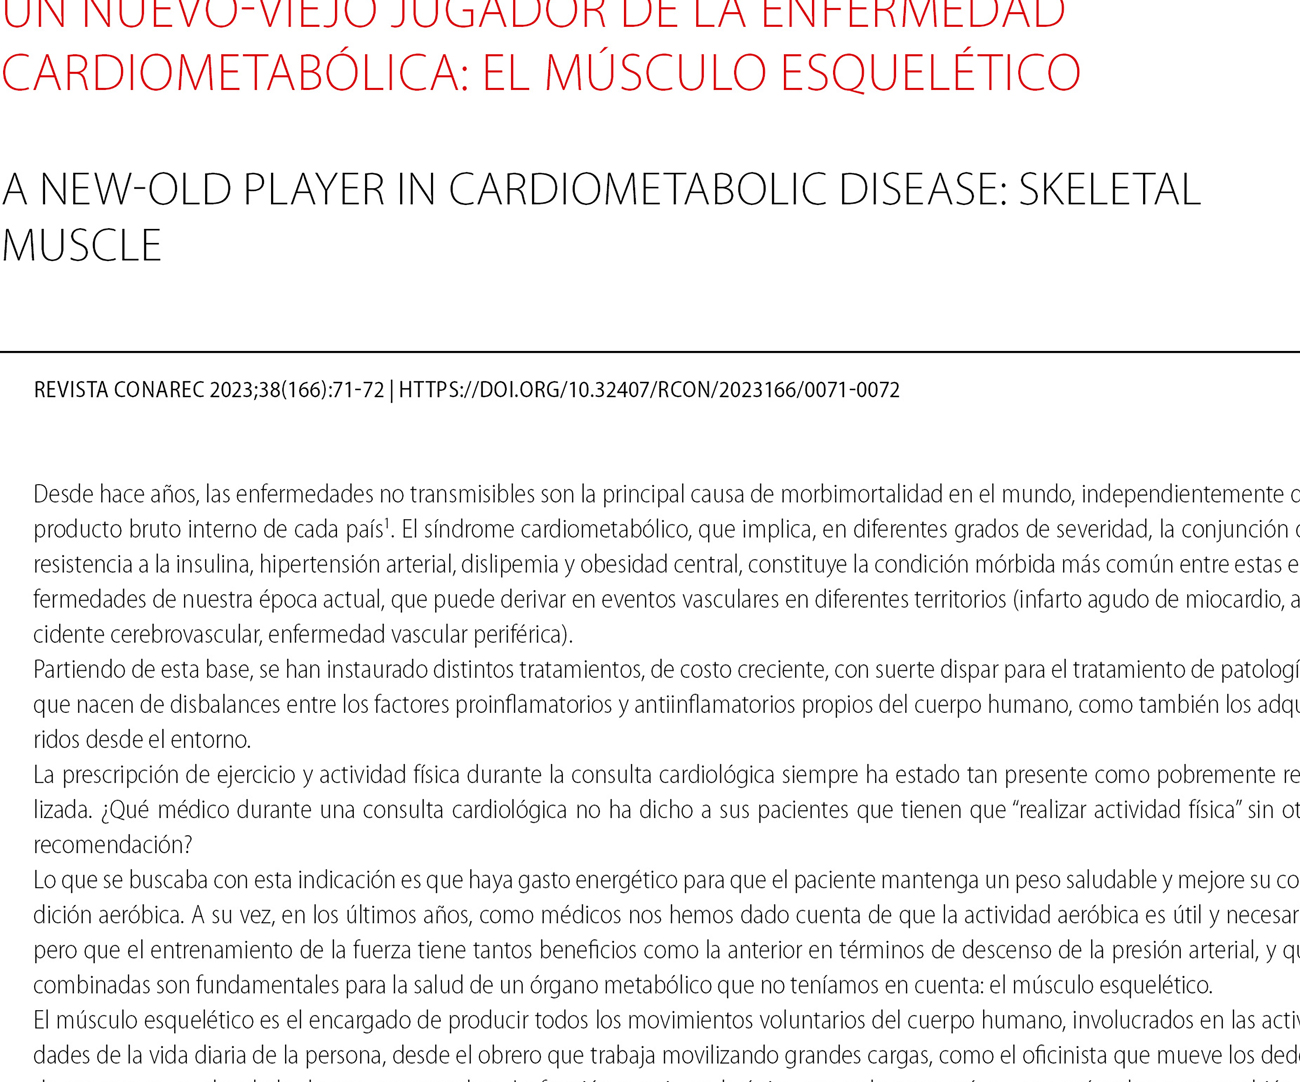 Un nuevo-viejo jugador de la enfermedad cardiometabólica: el músculo esquelético